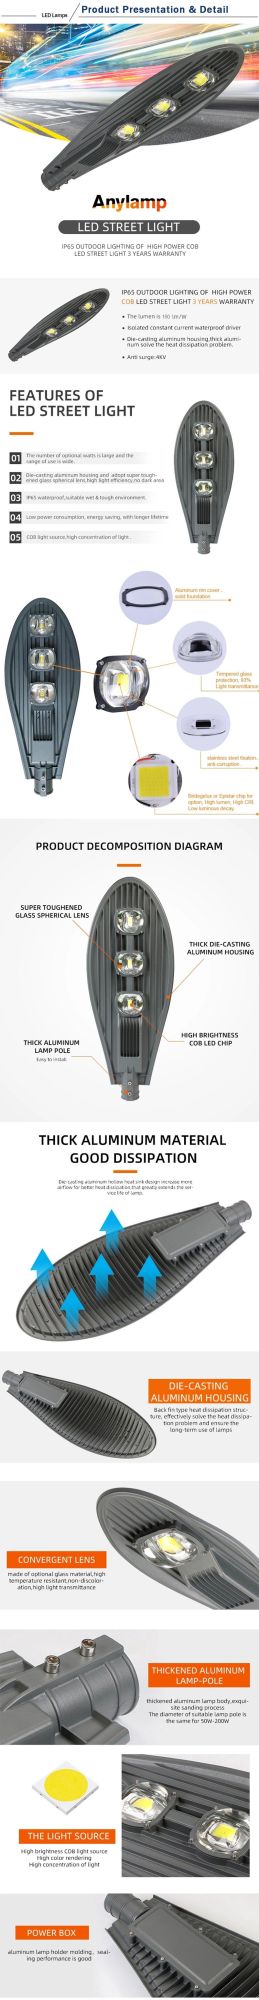 COB LED Light Source Aluminum Shell Cobra Head Street Lamp 200W